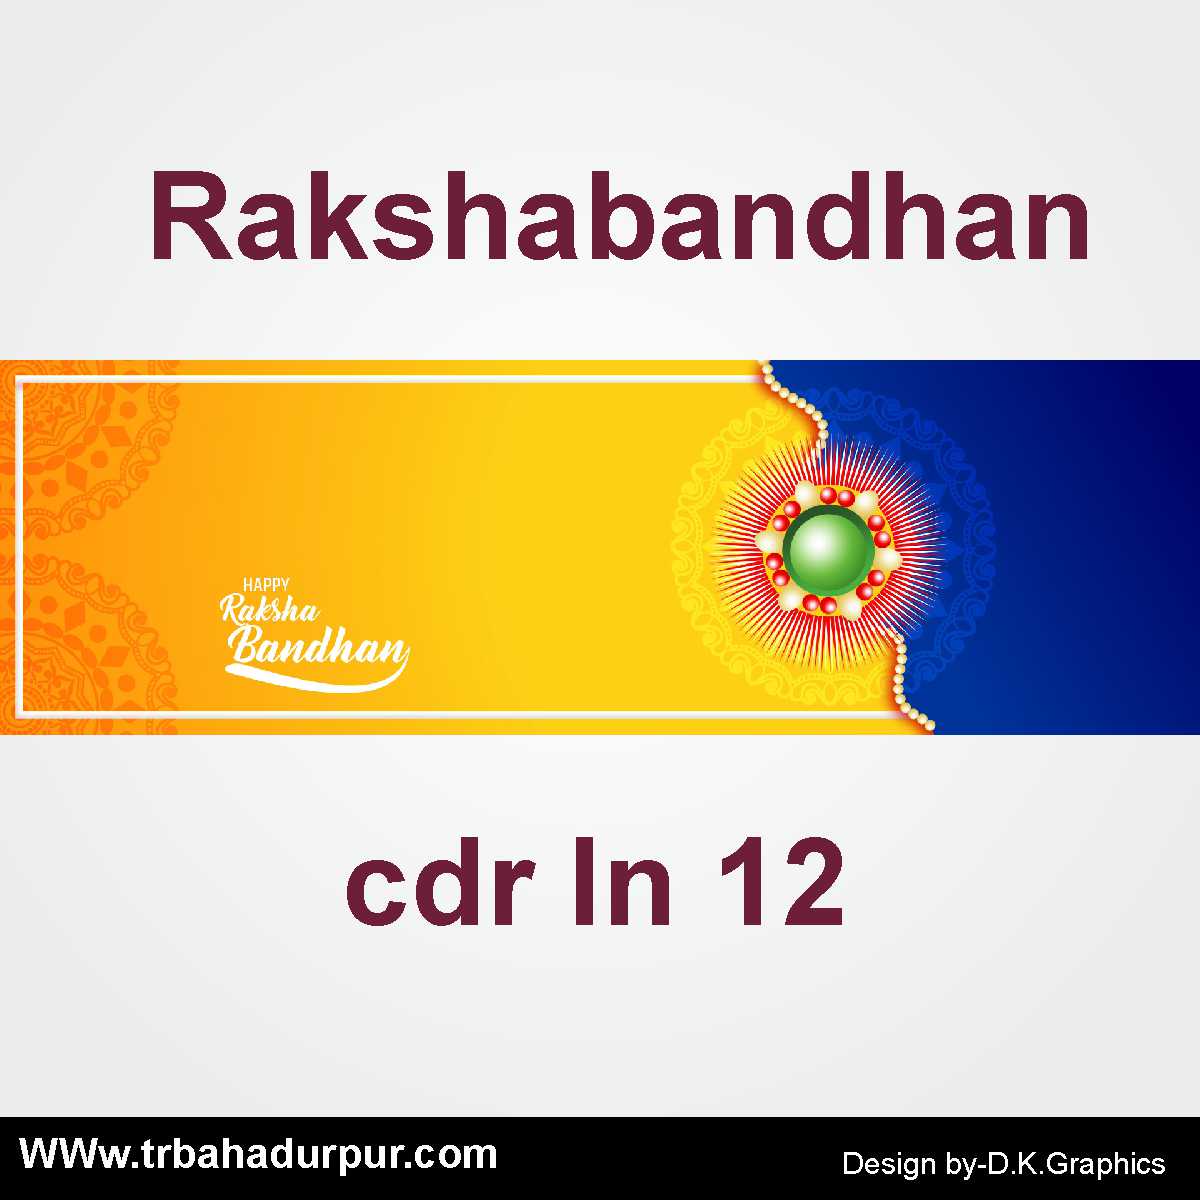 rakshabandhan background - TR BAHADURPUR